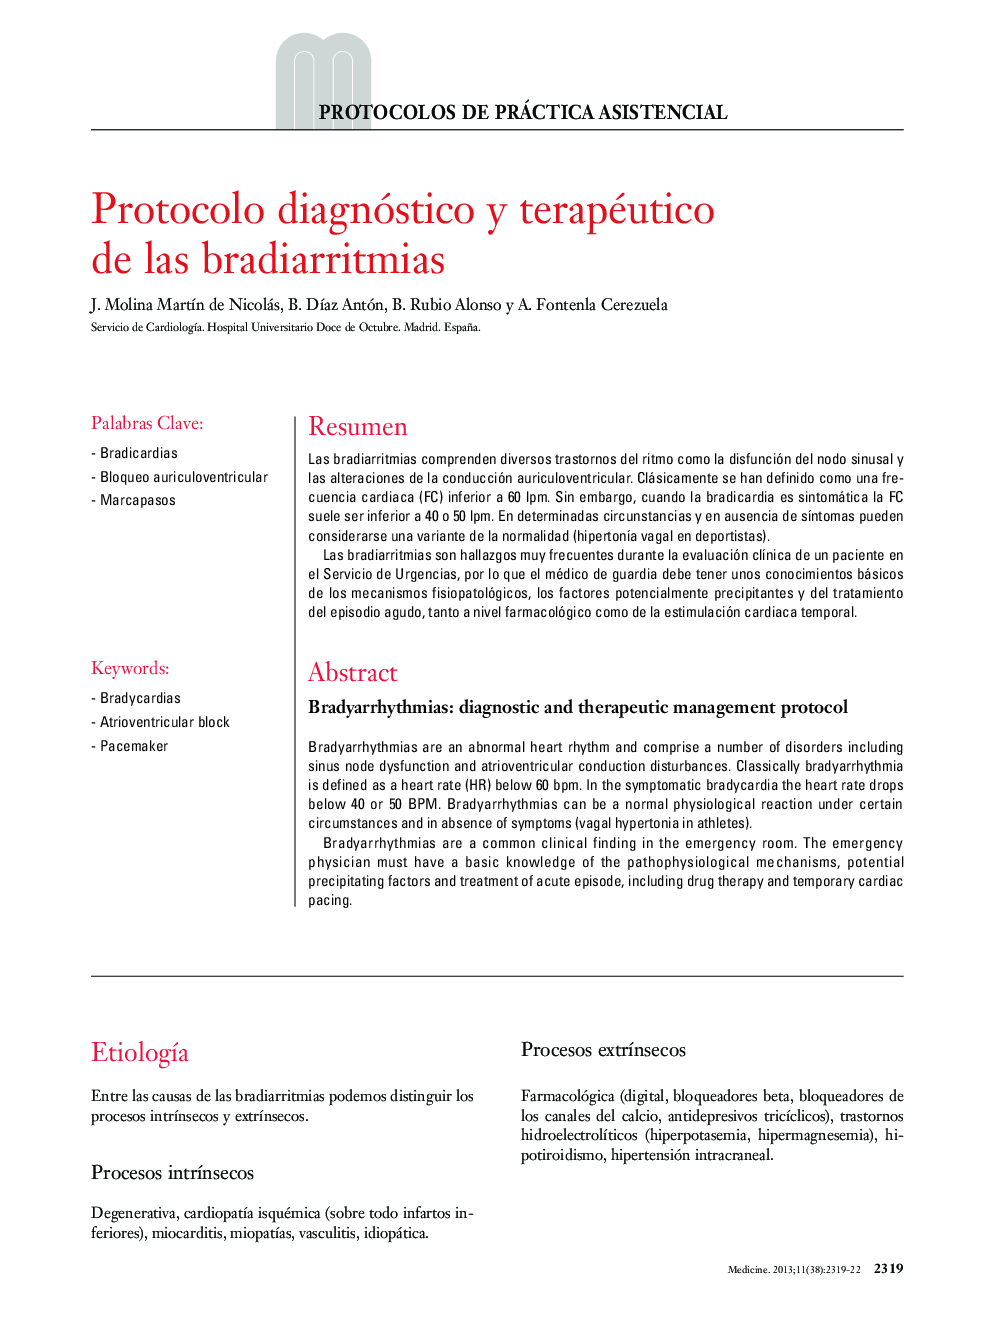 Protocolo diagnóstico y terapéutico de las bradiarritmias